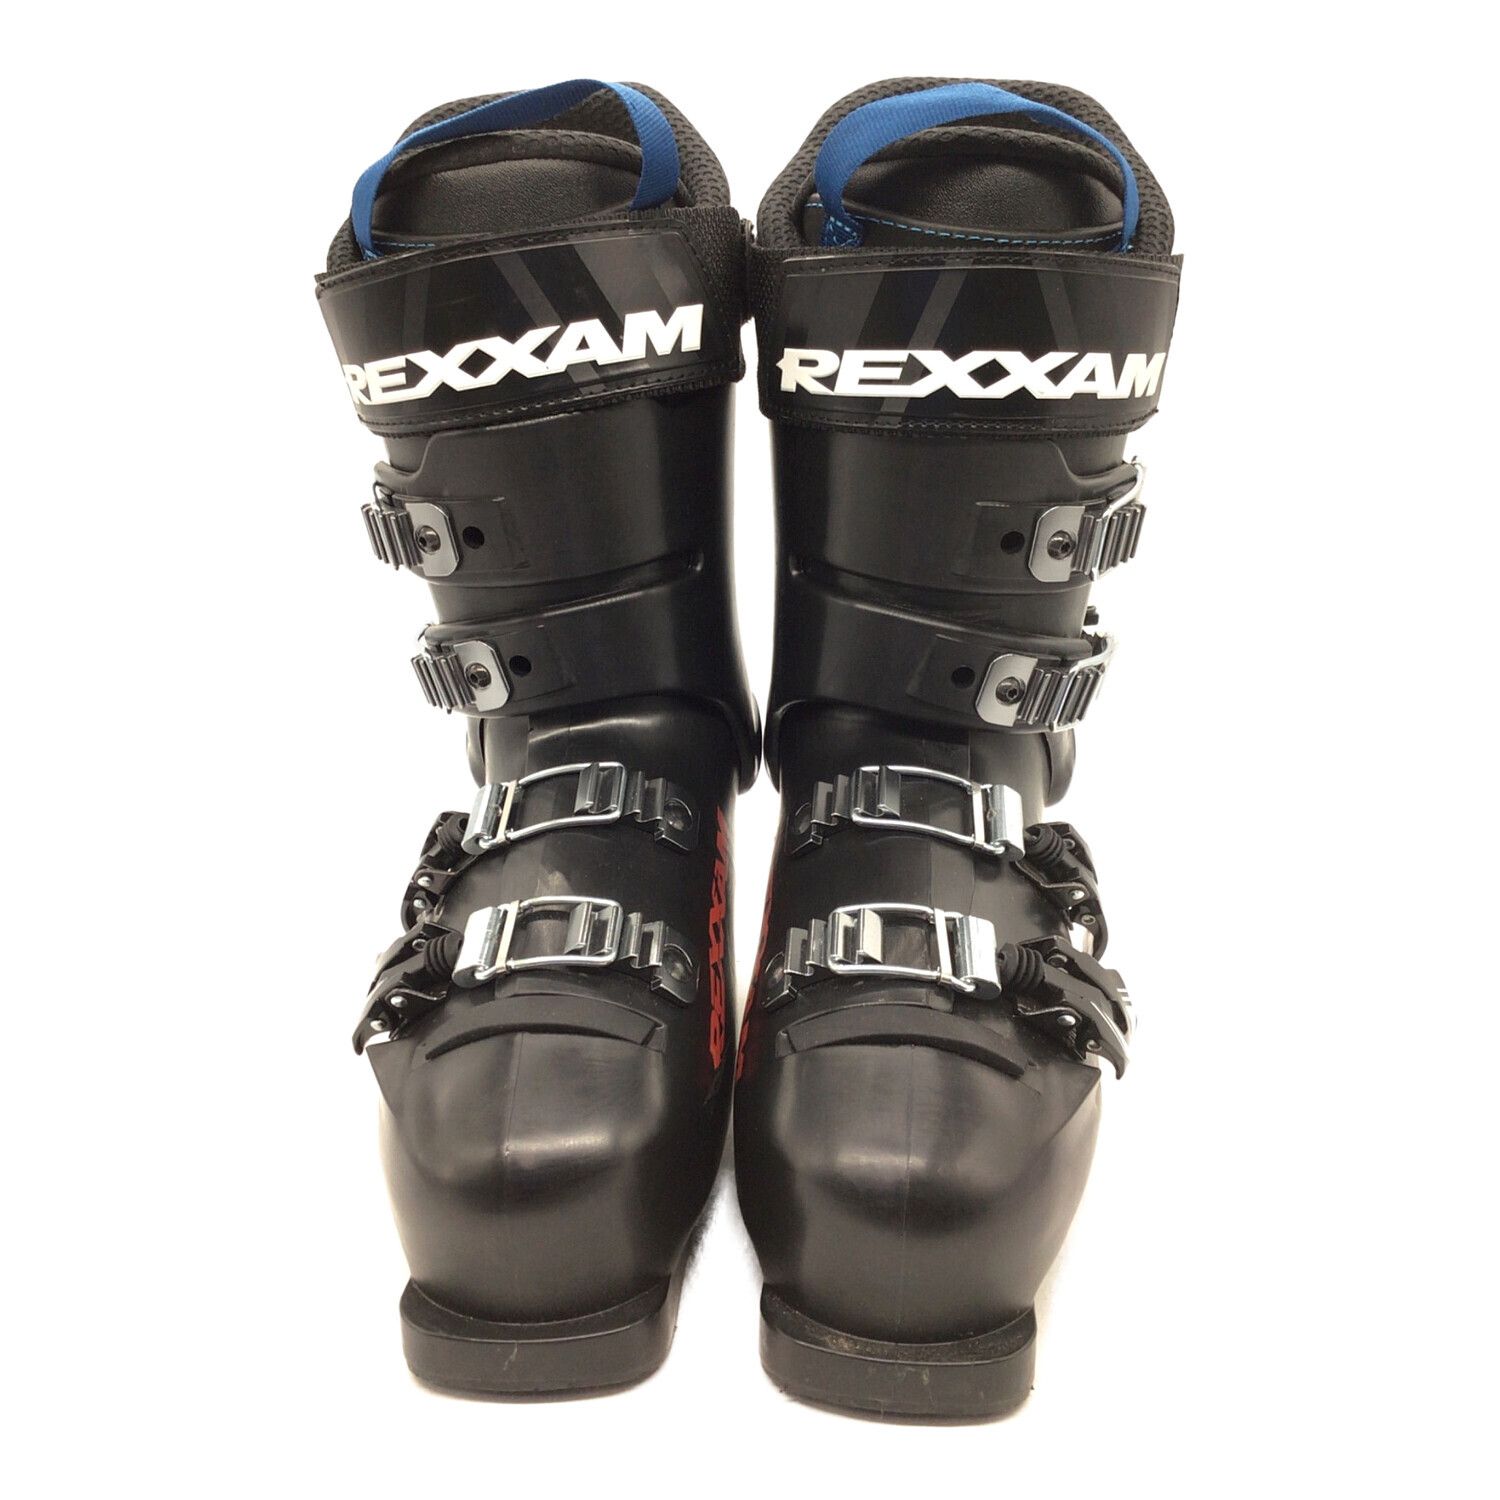 美品★ Rexxam レクサム XX CROSS 8.0 スキーブーツ ブーツサイズ7270275cm